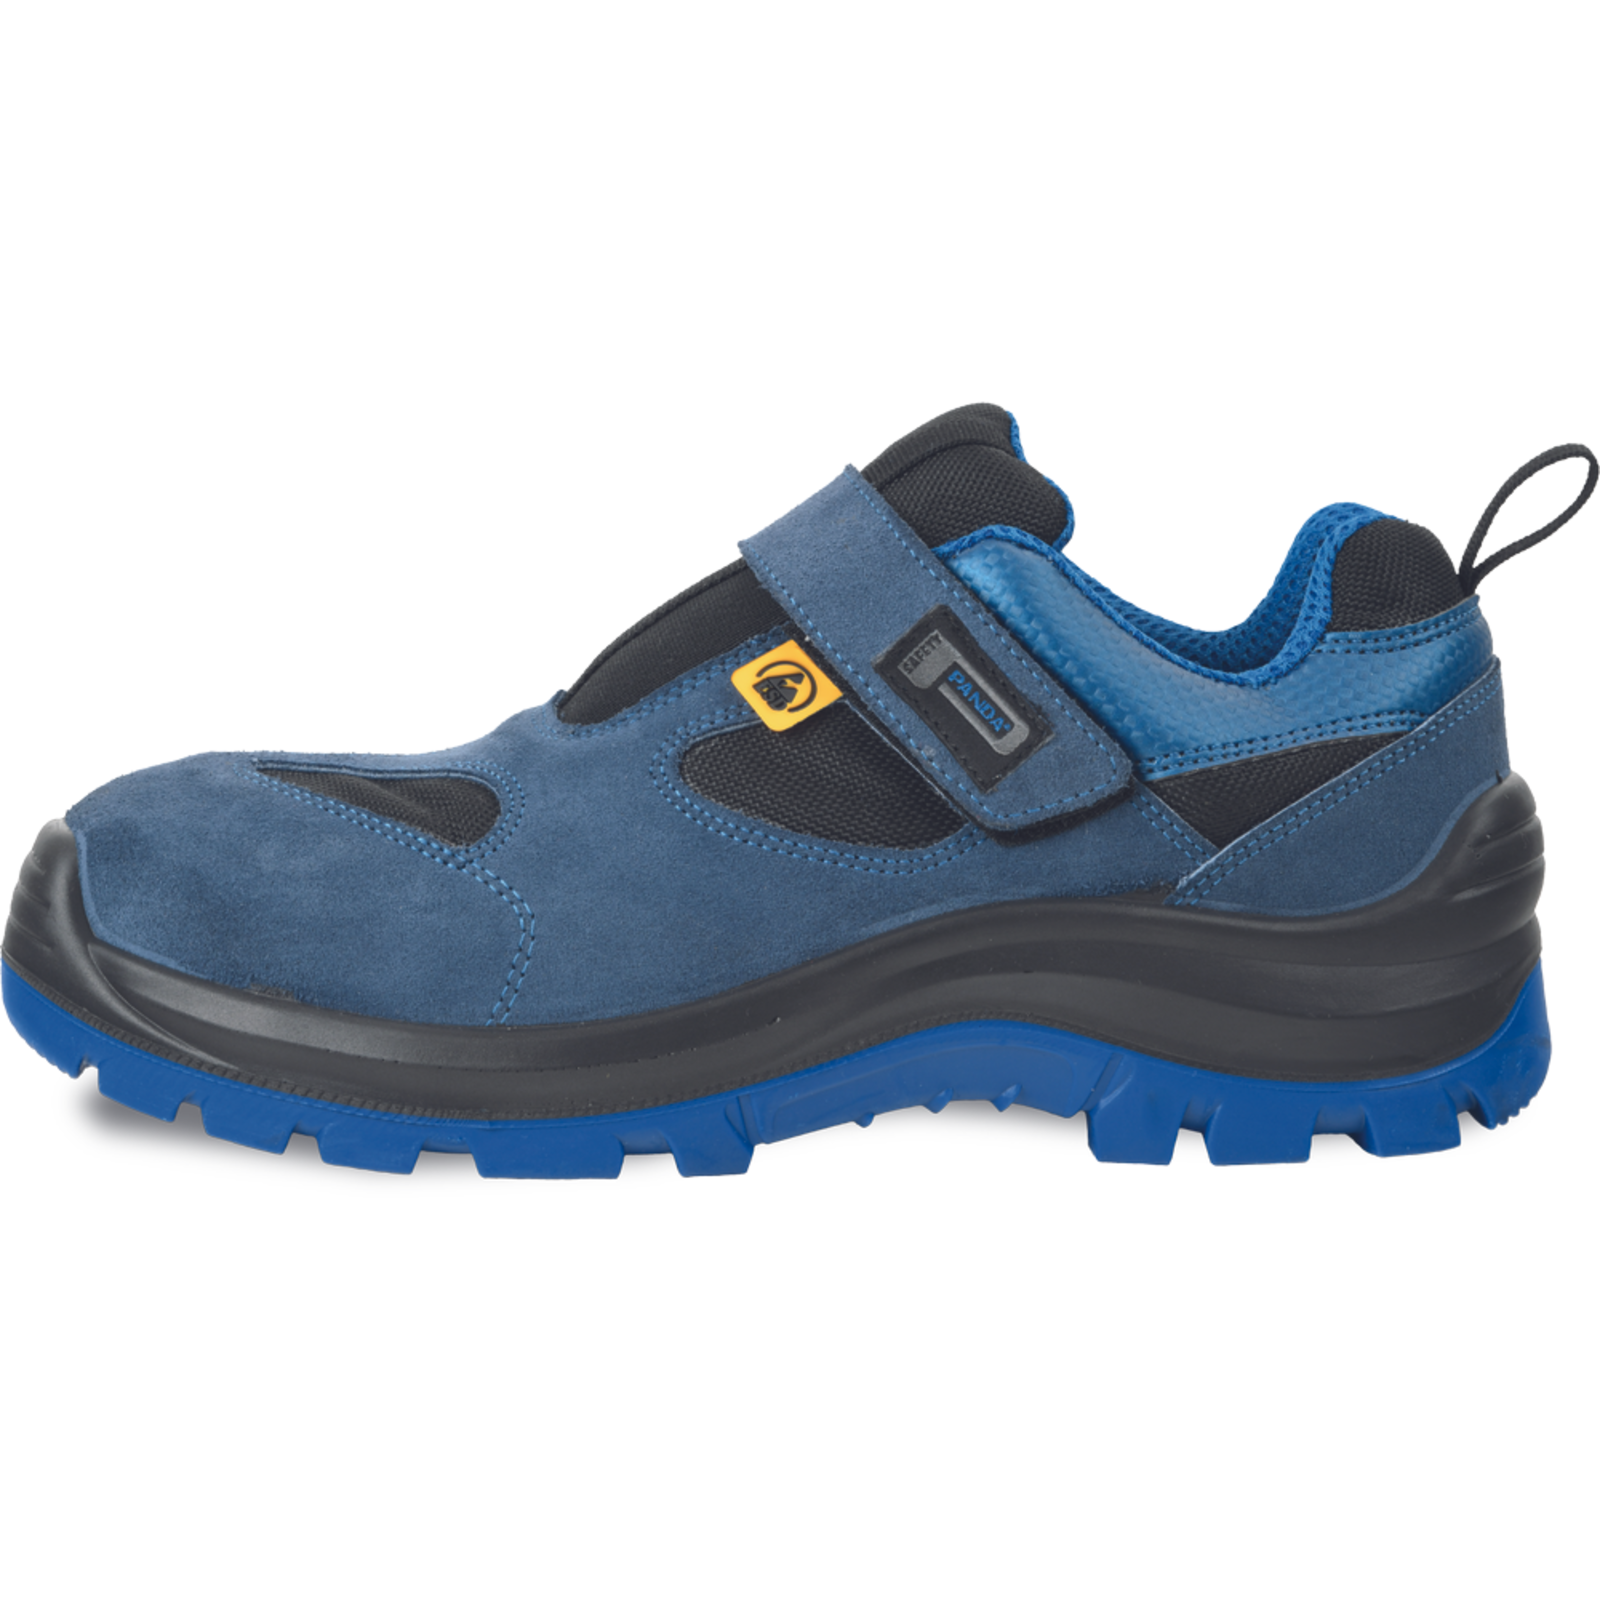 Bezpečnostné pracovné sandále Panda Wilk MF ESD S1P SRC - veľkosť: 48, farba: modrá/čierna